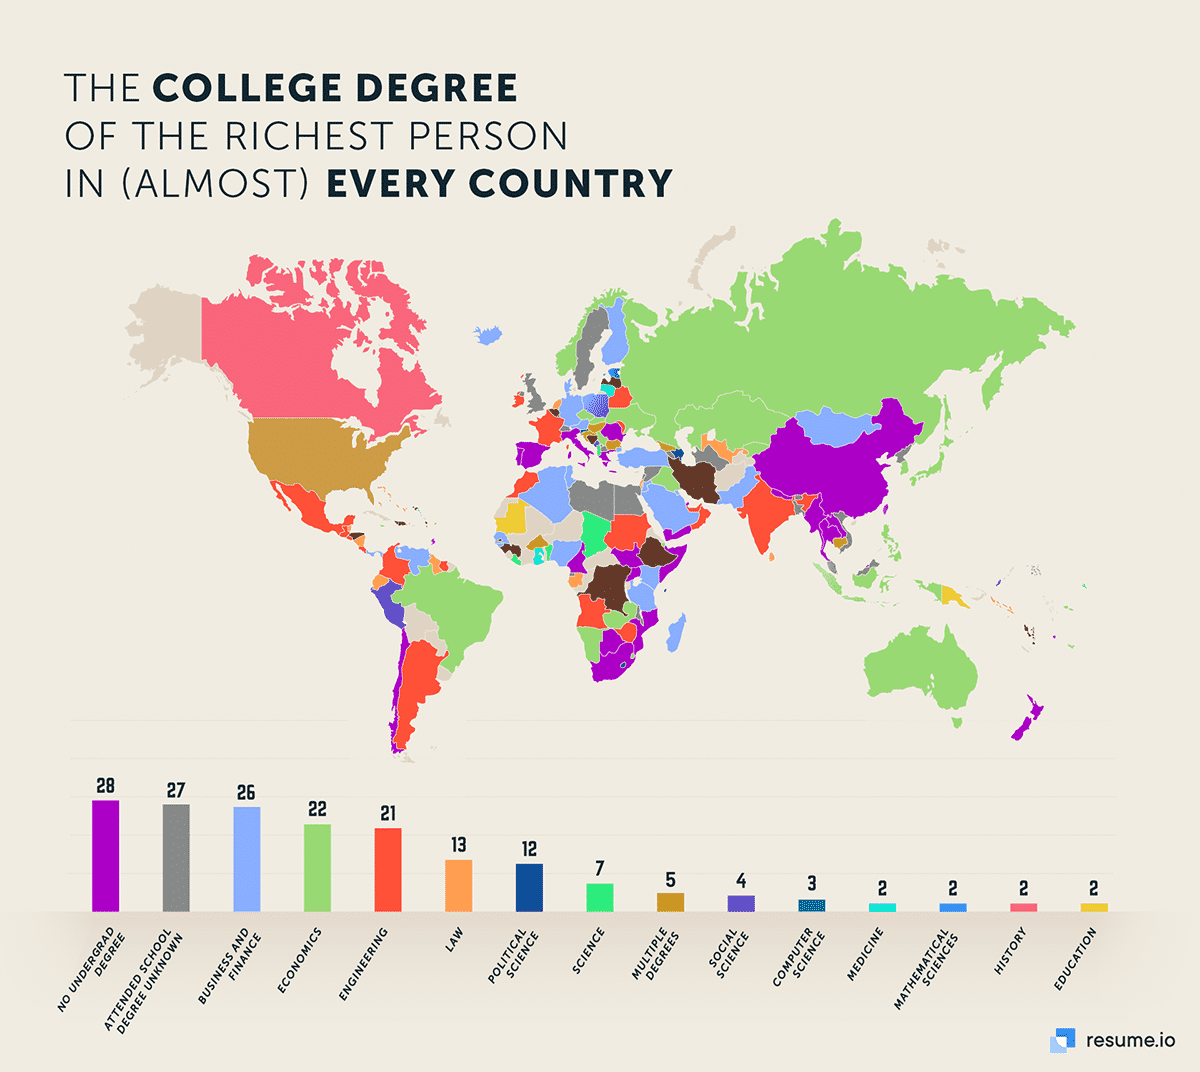 Høyskolegraden til den rikeste personen i nesten alle land